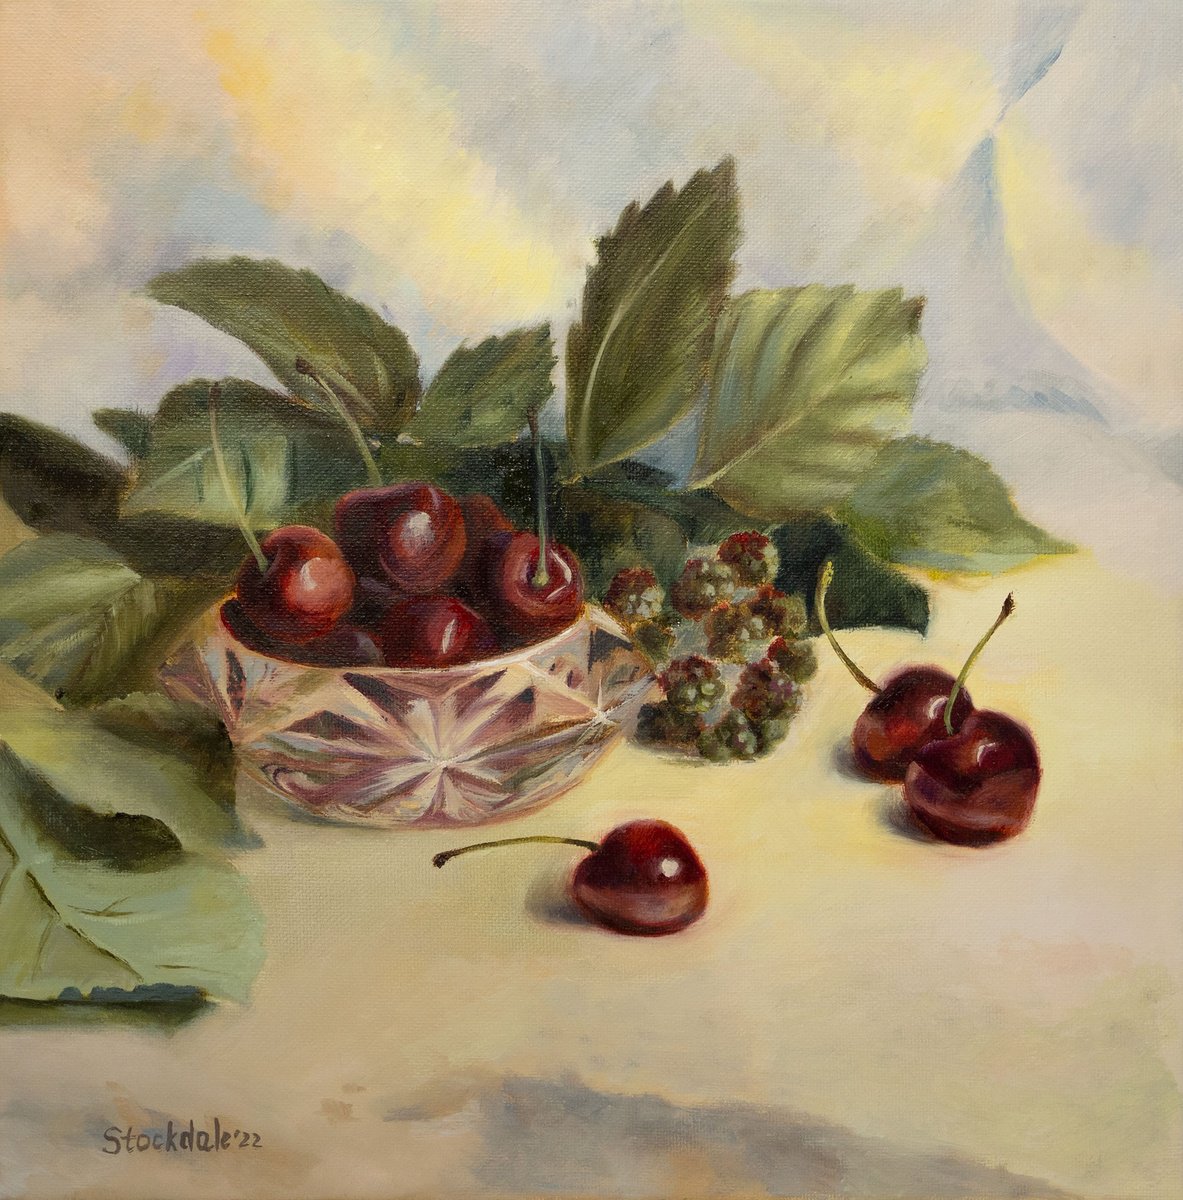 Cherries and Green Blackberries by Maria Stockdale